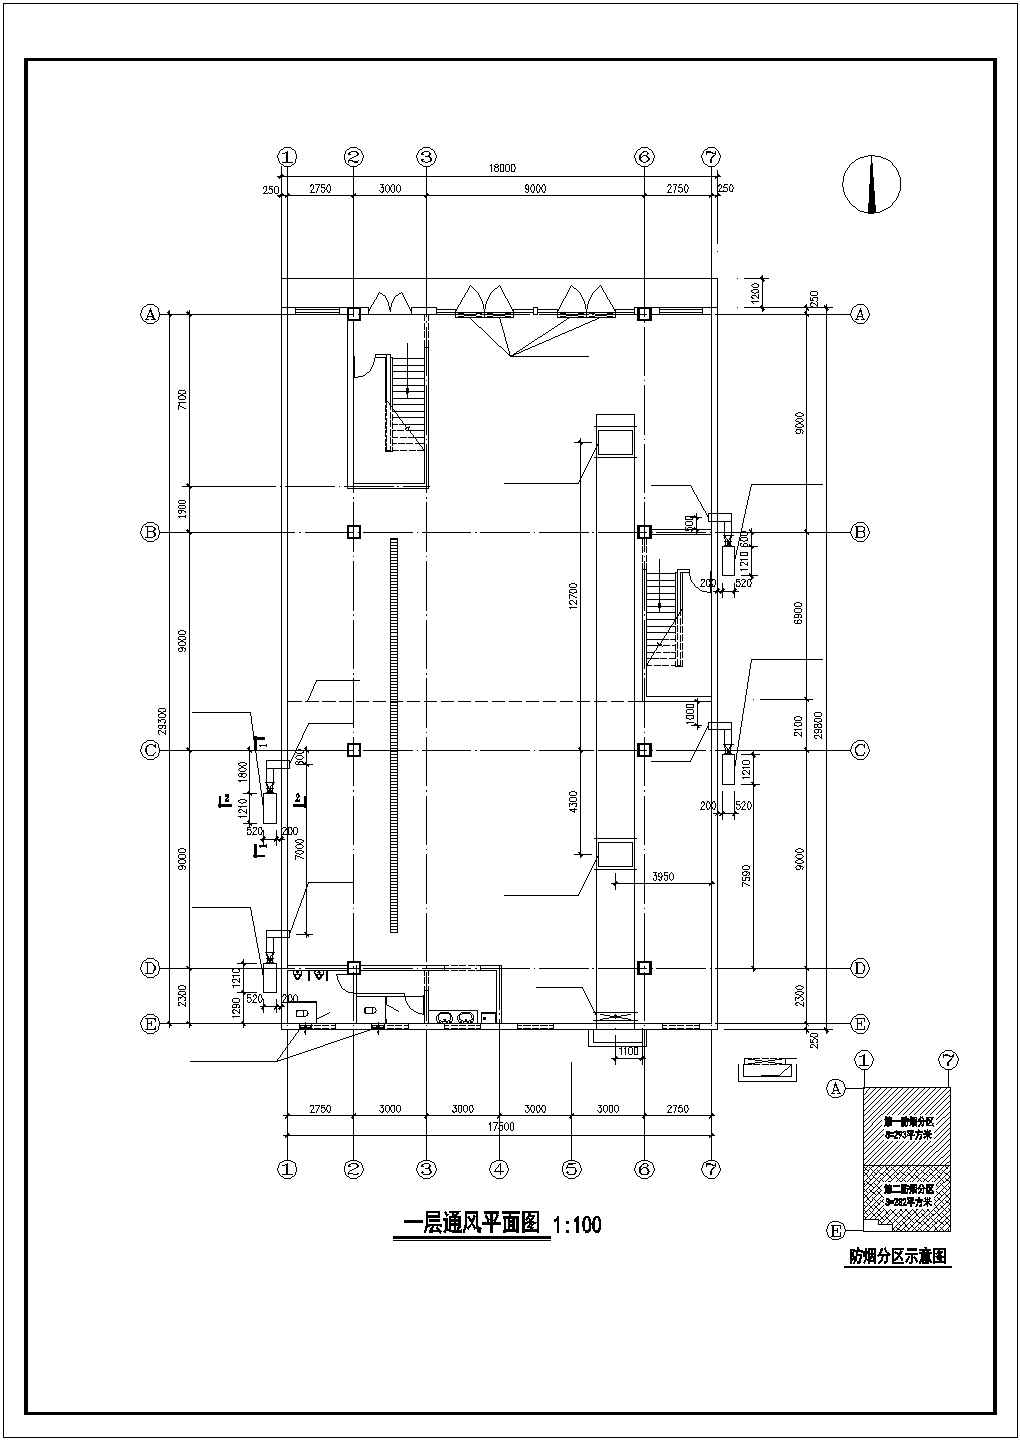 【湖南】某综合楼办公楼暖通系统设计施工图